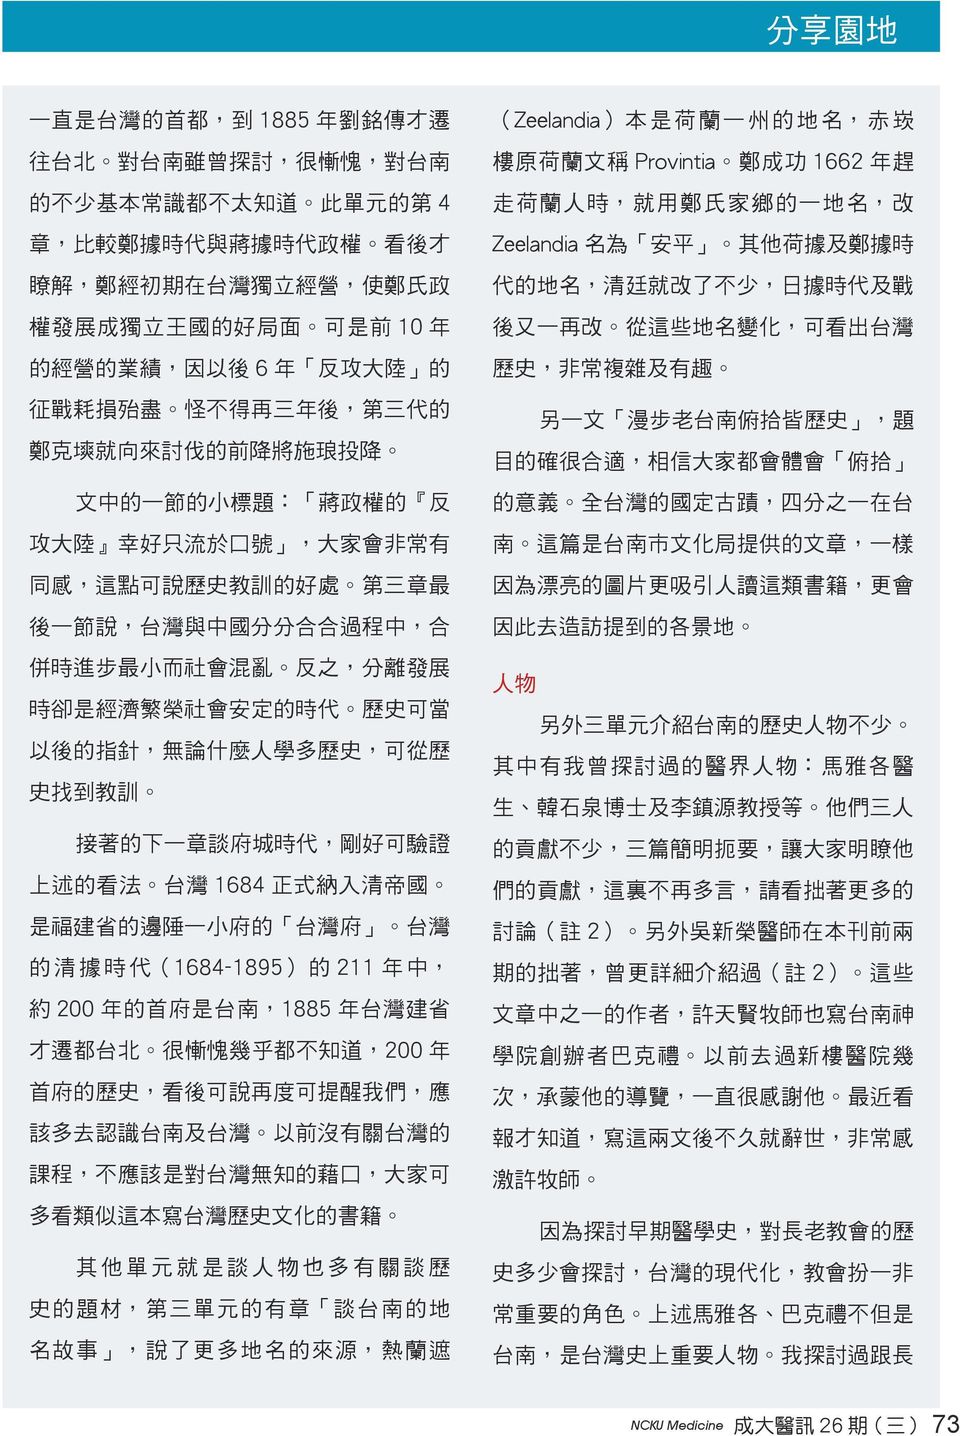 好 處 第 三 章 最 後 一 節 說, 台 灣 與 中 國 分 分 合 合 過 程 中, 合 併 時 進 步 最 小 而 社 會 混 亂 反 之, 分 離 發 展 時 卻 是 經 濟 繁 榮 社 會 安 定 的 時 代 歷 史 可 當 以 後 的 指 針, 無 論 什 麼 人 學 多 歷 史, 可 從 歷 史 找 到 教 訓 接 著 的 下 一 章 談 府 城 時 代, 剛 好 可 驗 證 上